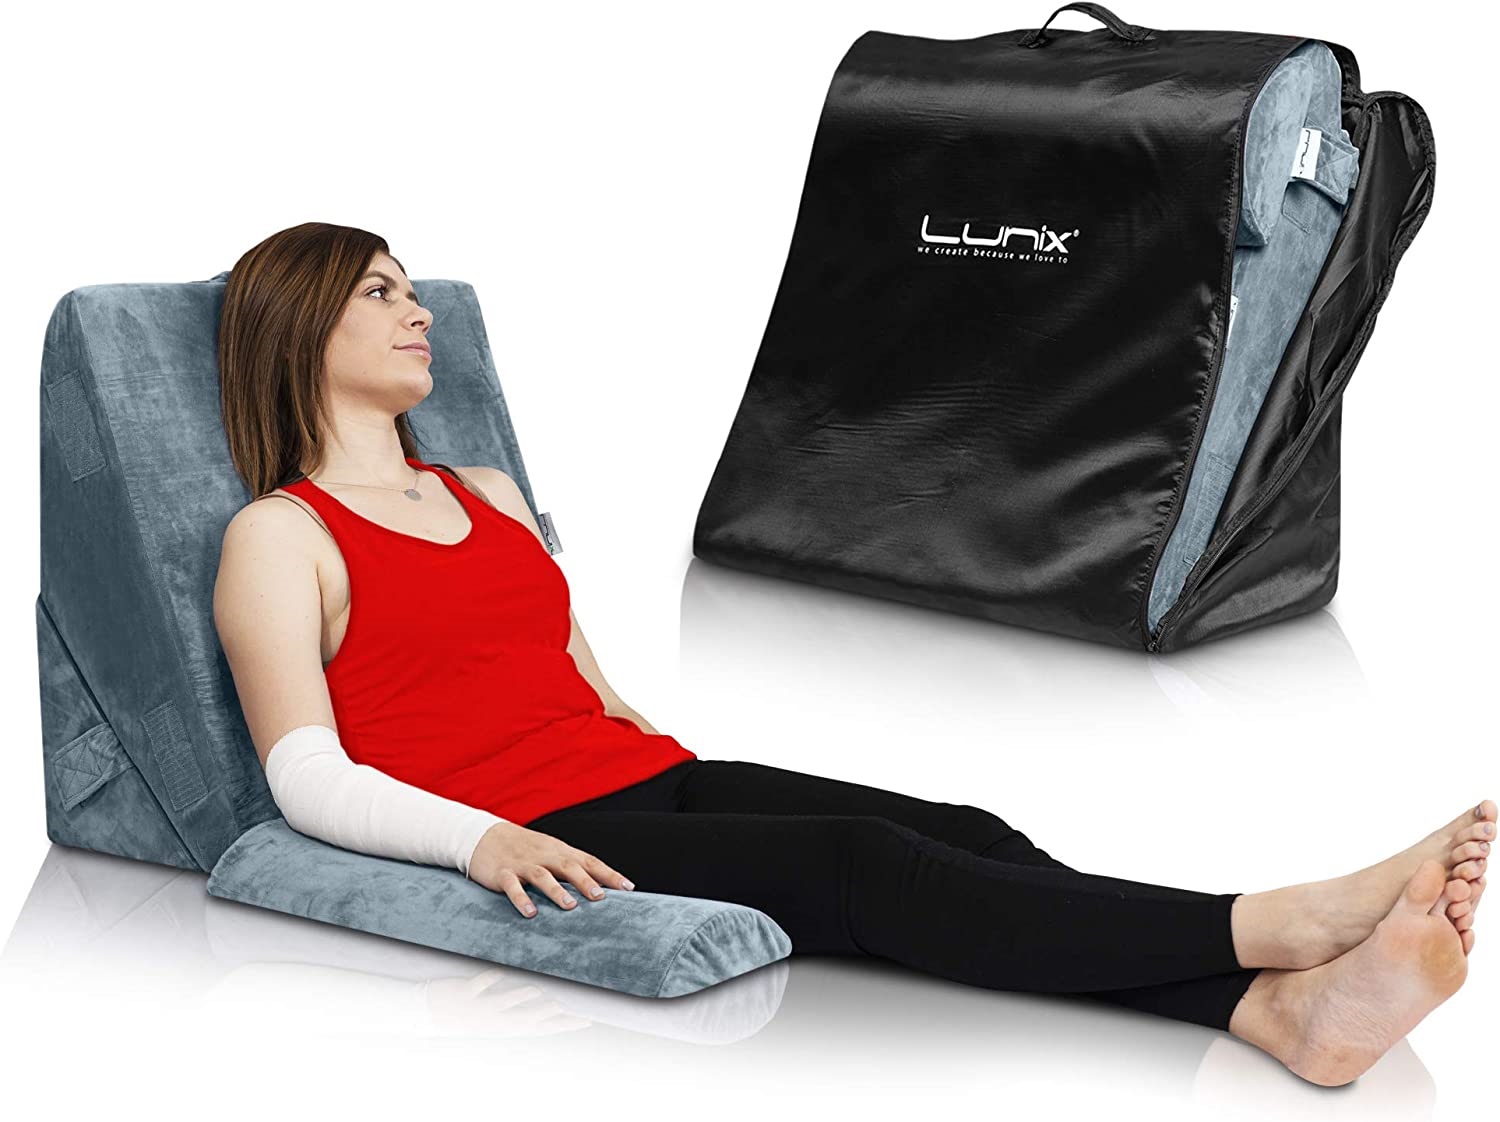 Lunix LX6 3pcs Orthopedic Bed Wedge Pillow Set